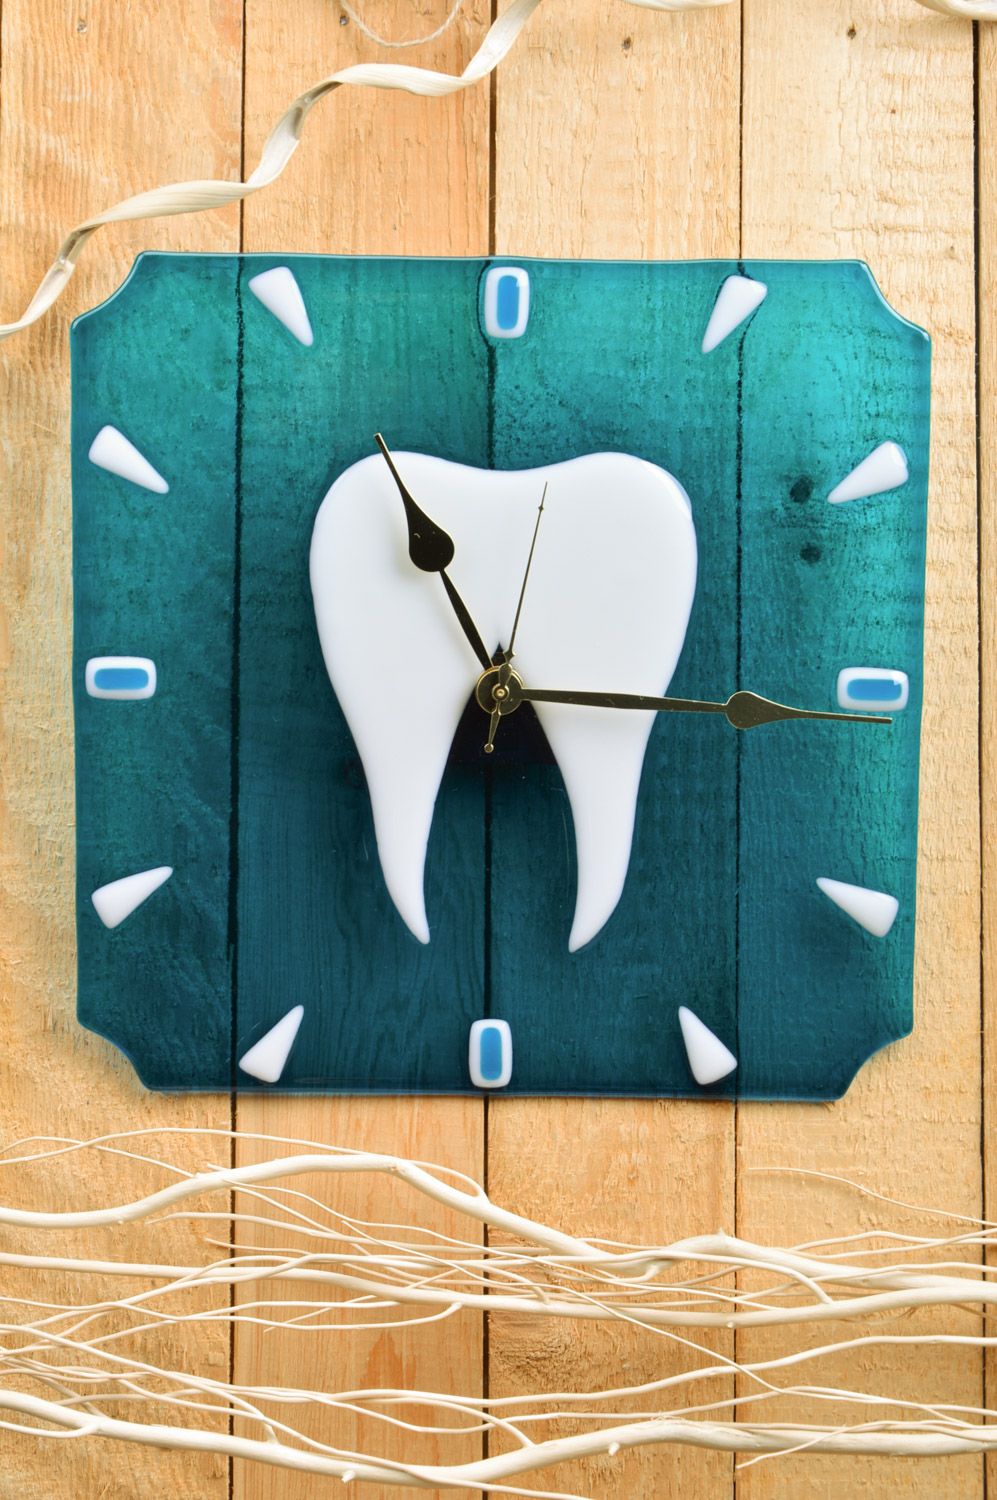 Часы из стекла в технике фьюзинг ручной работы зуб на голубом фоне для стоматологии фото 1